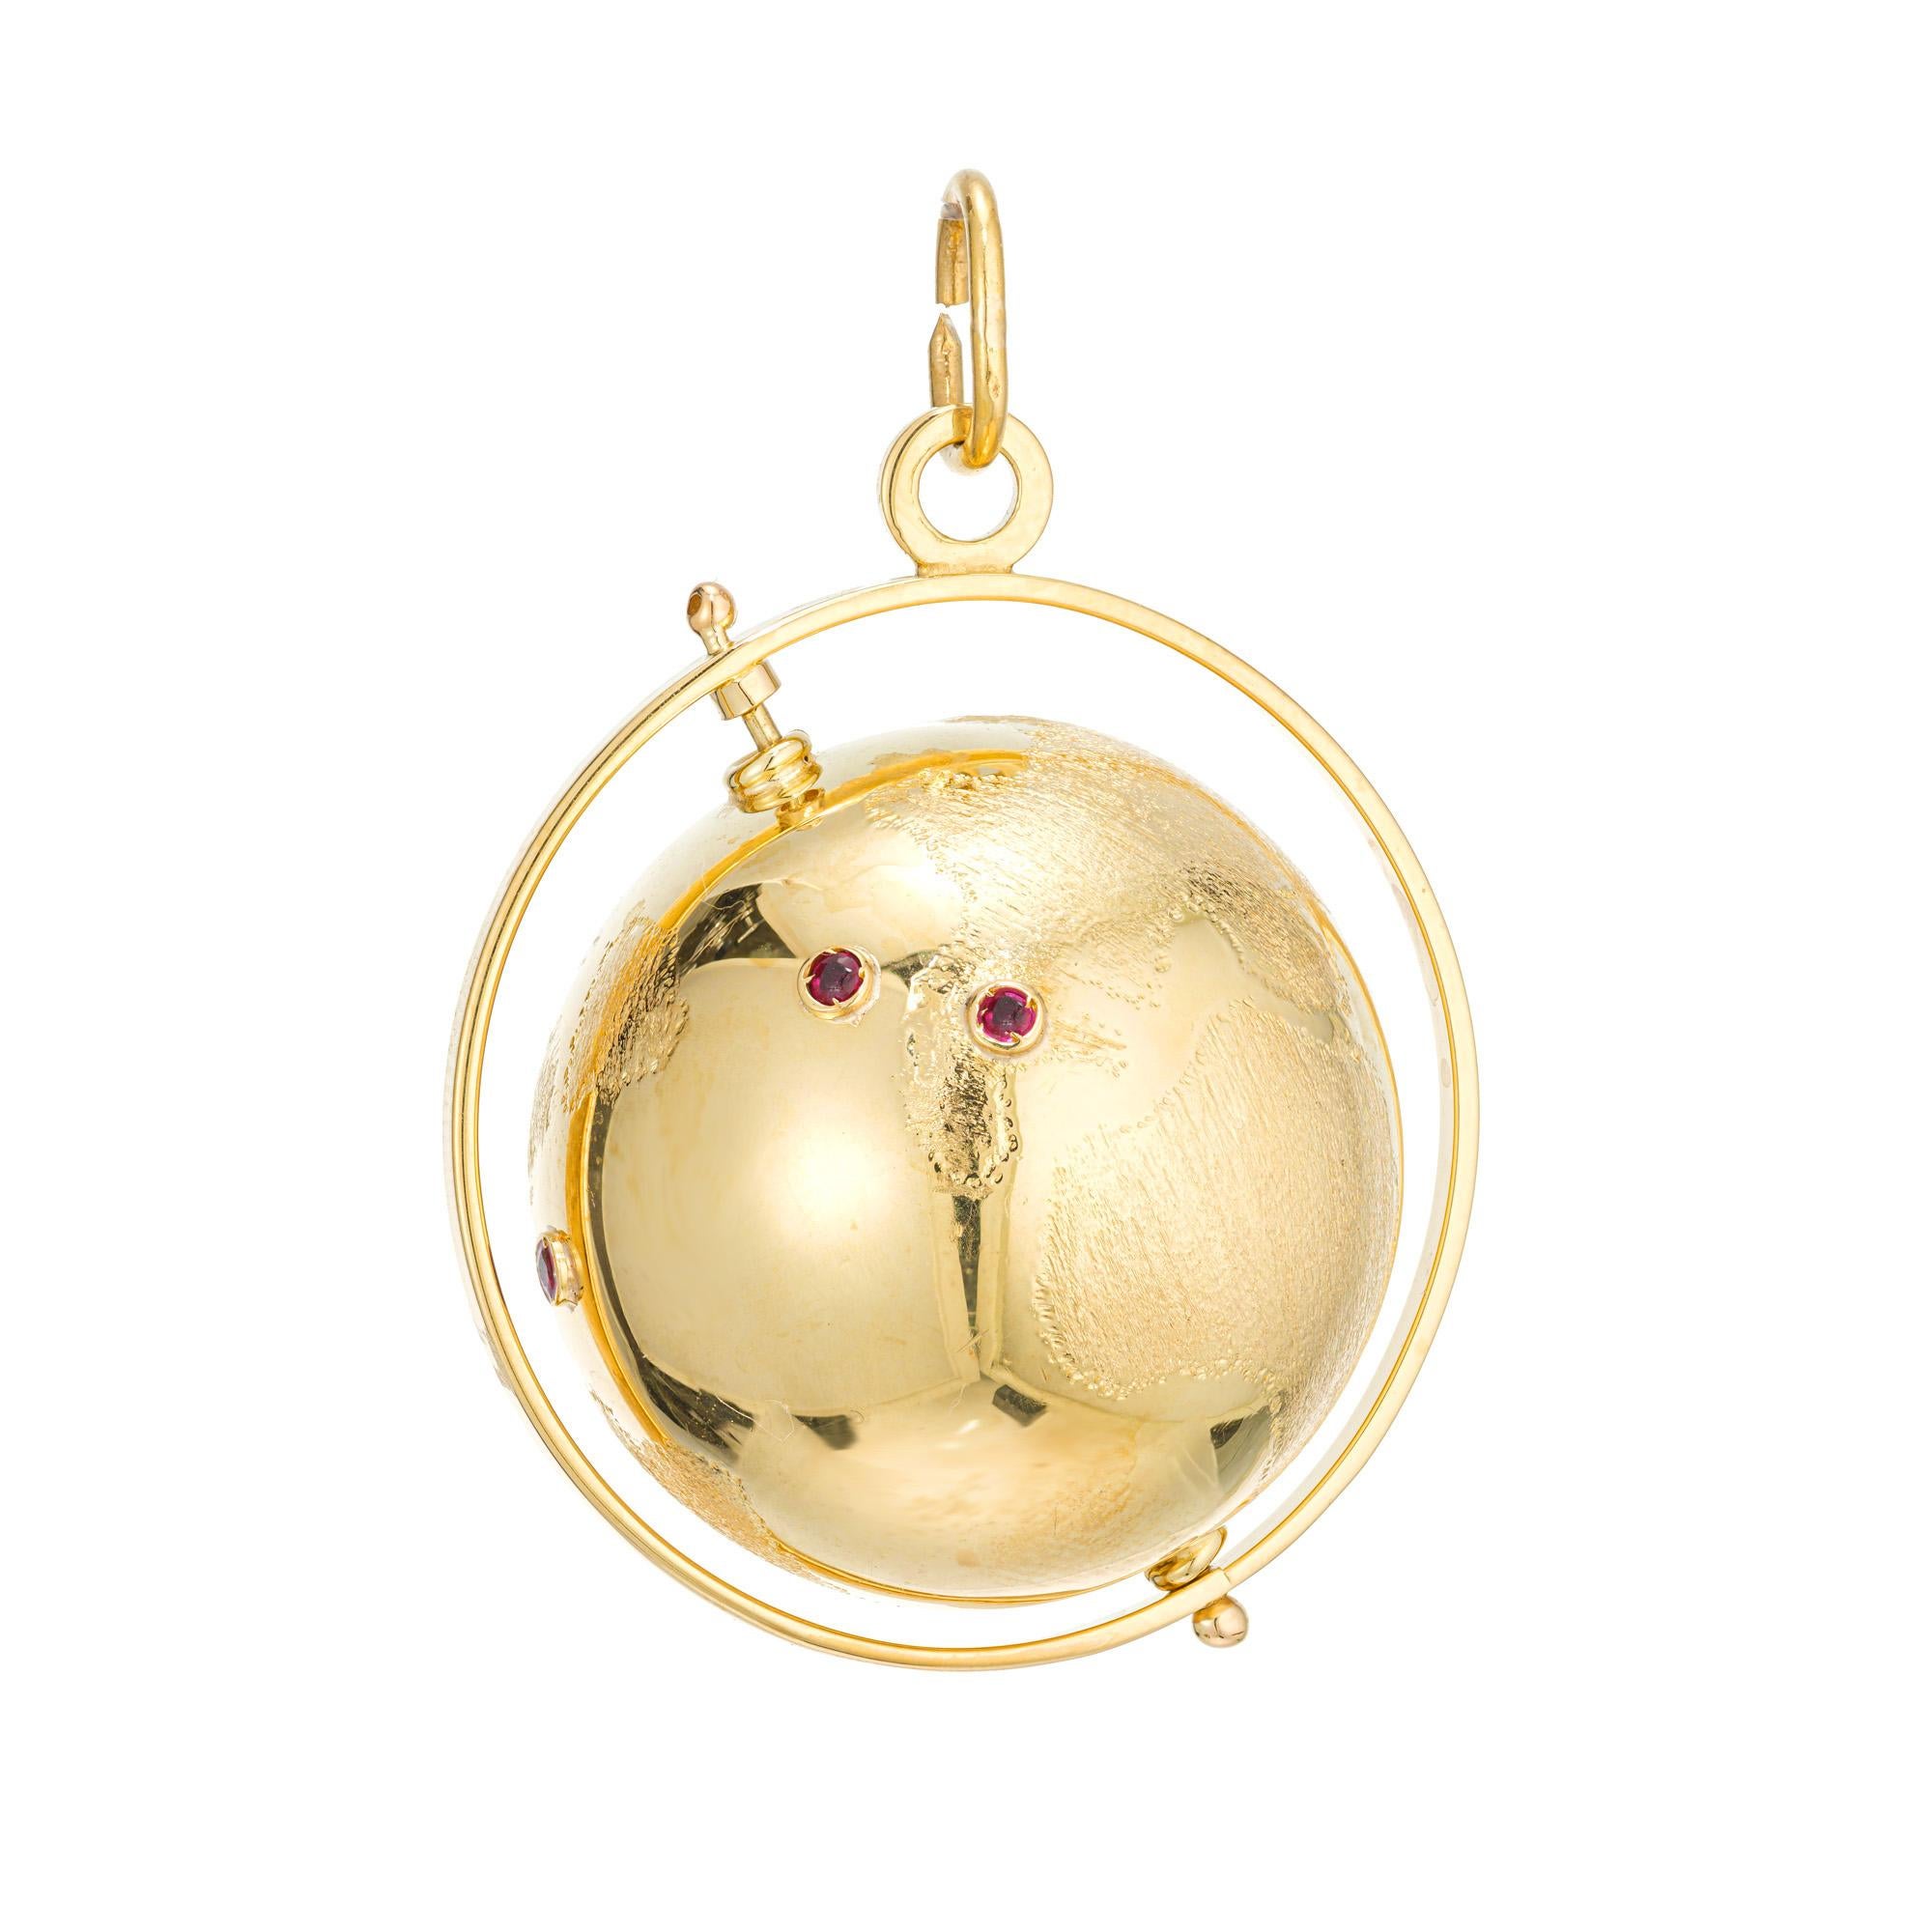 1960's Three Dimensional 18k Gelbgold Spinning Globe Charme mit gravierten Kontinenten und Rubin Akzente.

4 runde rote Rubine, ca. .8cts
18k Gelbgold 
Geprüft: 18k
9,7 Gramm
Von oben nach unten: 42,42 mm oder 1,61 Zoll
Breite: 30 mm oder 1,2